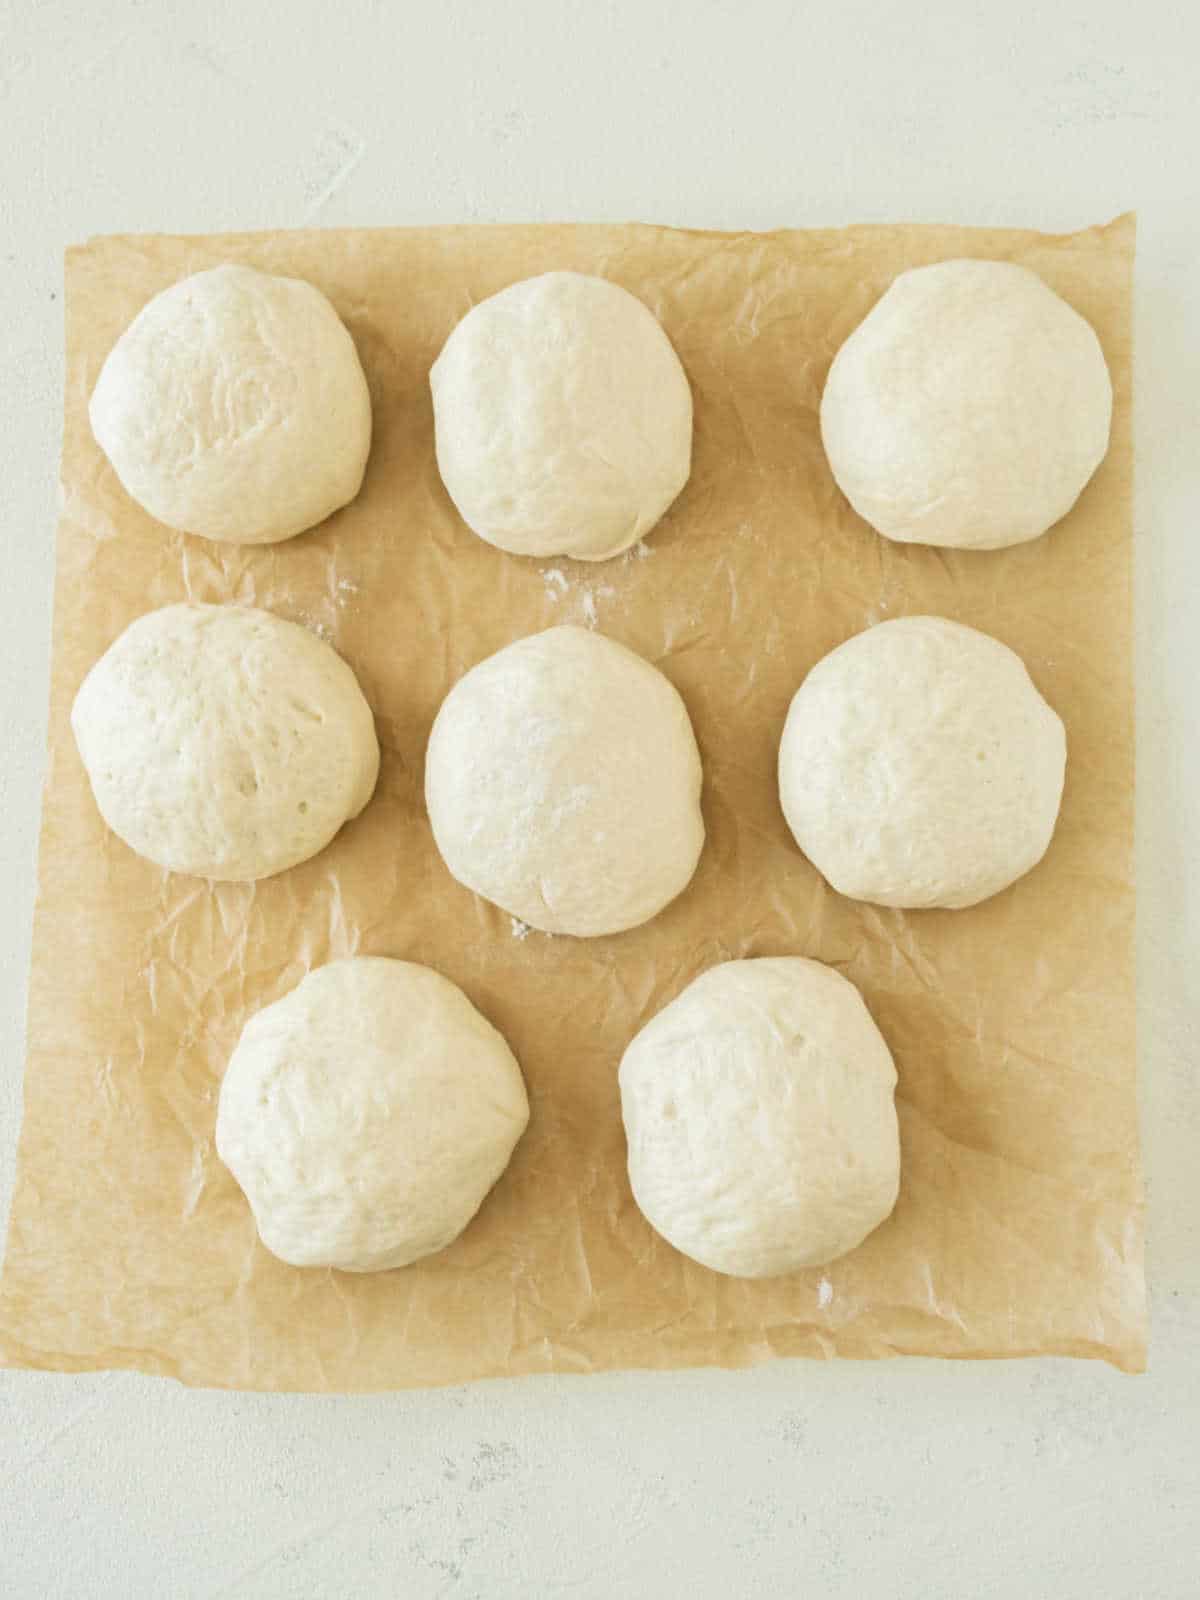 Dough balls on beige parchment paper.